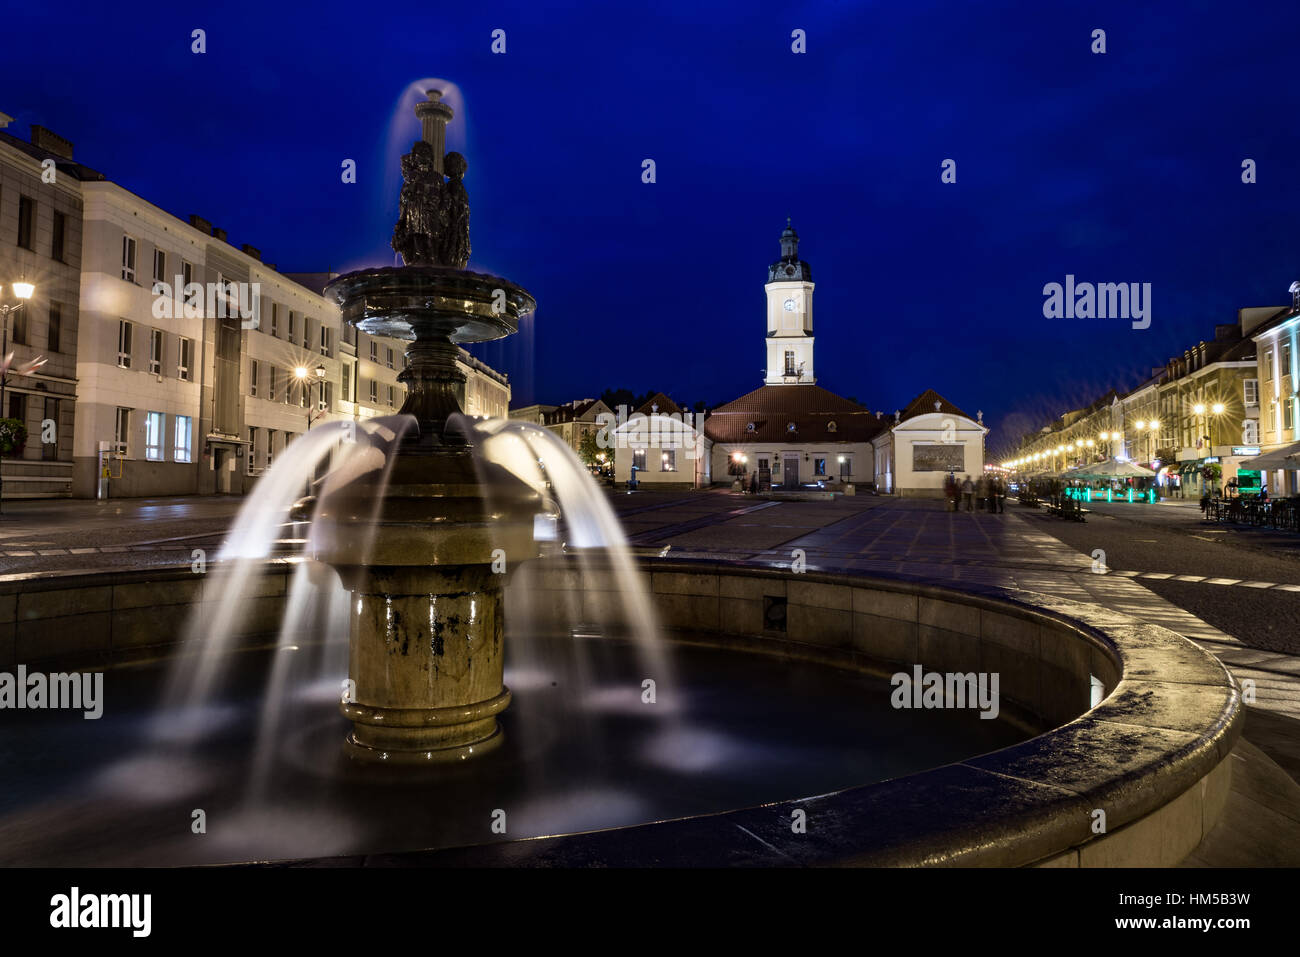 Vue de la nuit de Bialystok, capitale de Podlasie en Pologne Banque D'Images